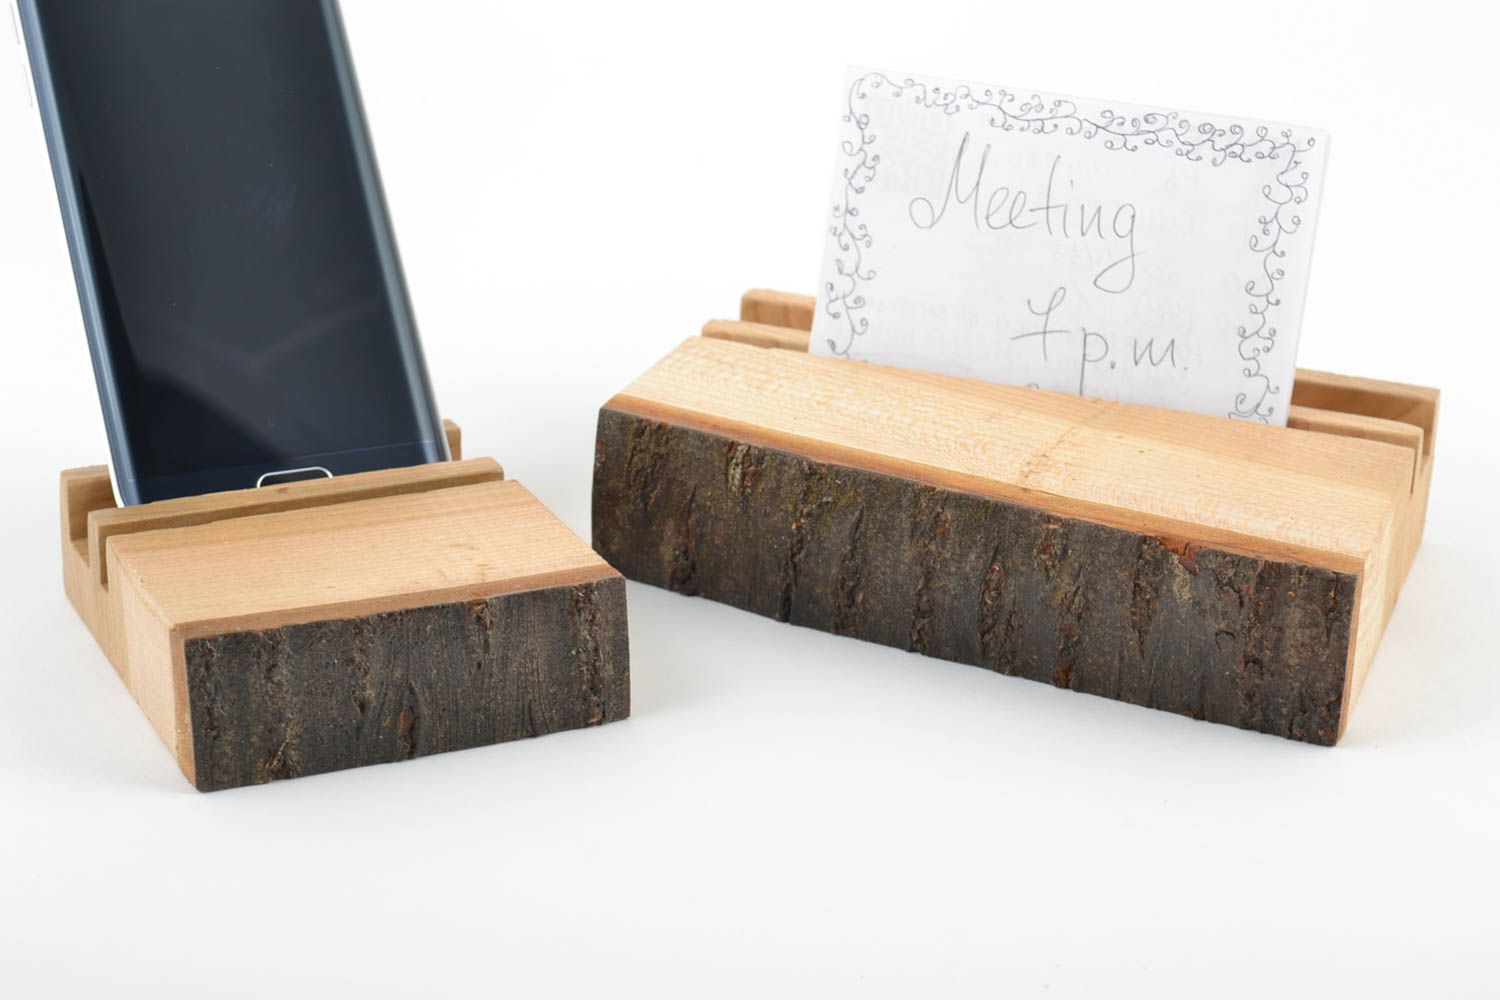 Soportes de madera para Tablet o móvil hechos a mano 2 artículos ecológicos  foto 1